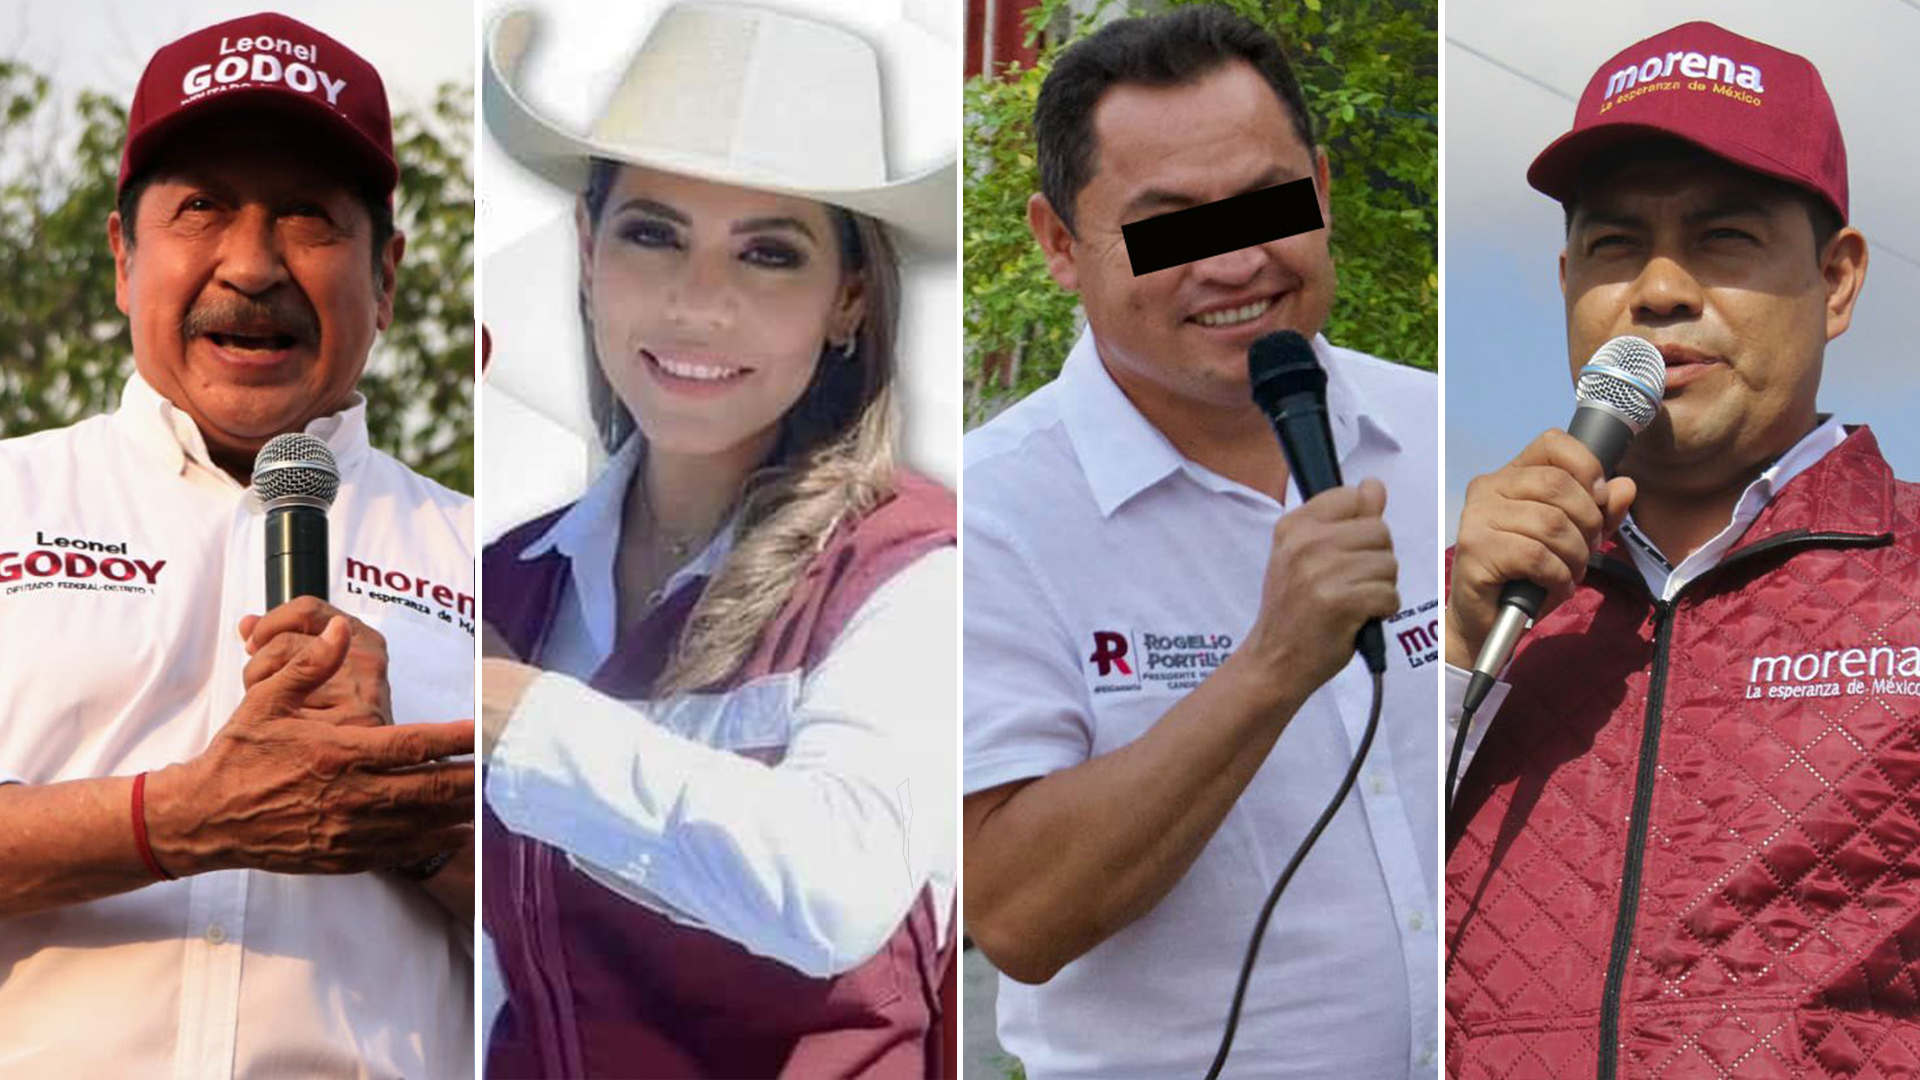 Las “fichitas” de Morena: candidatos vinculados al narco que continúan en  campaña - Infobae